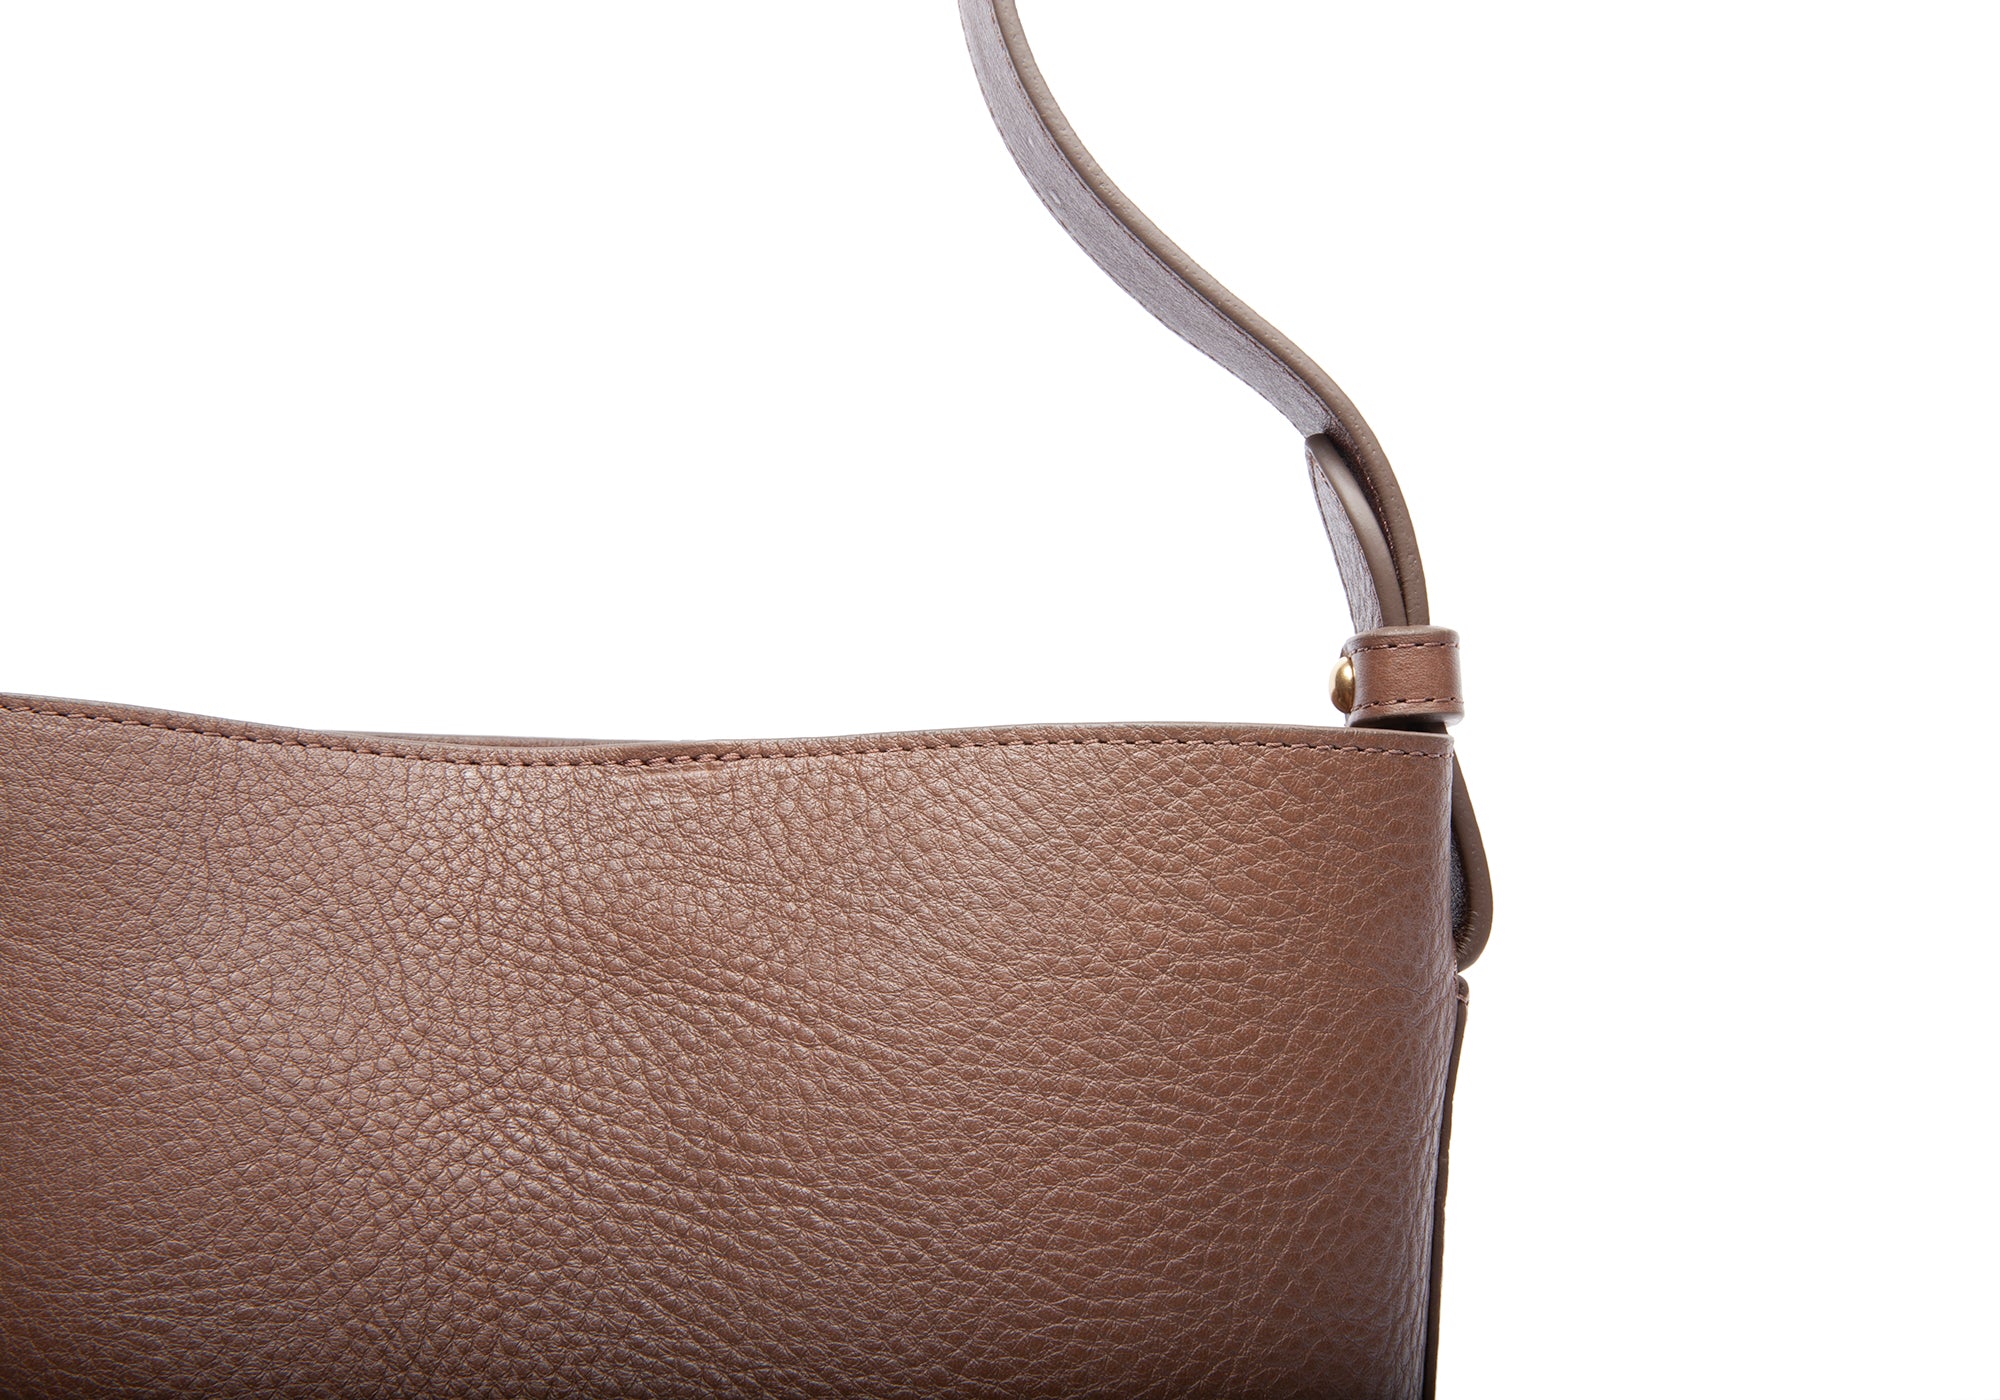 Hobo Leather Shoulder Bag - Yahoo Shopping